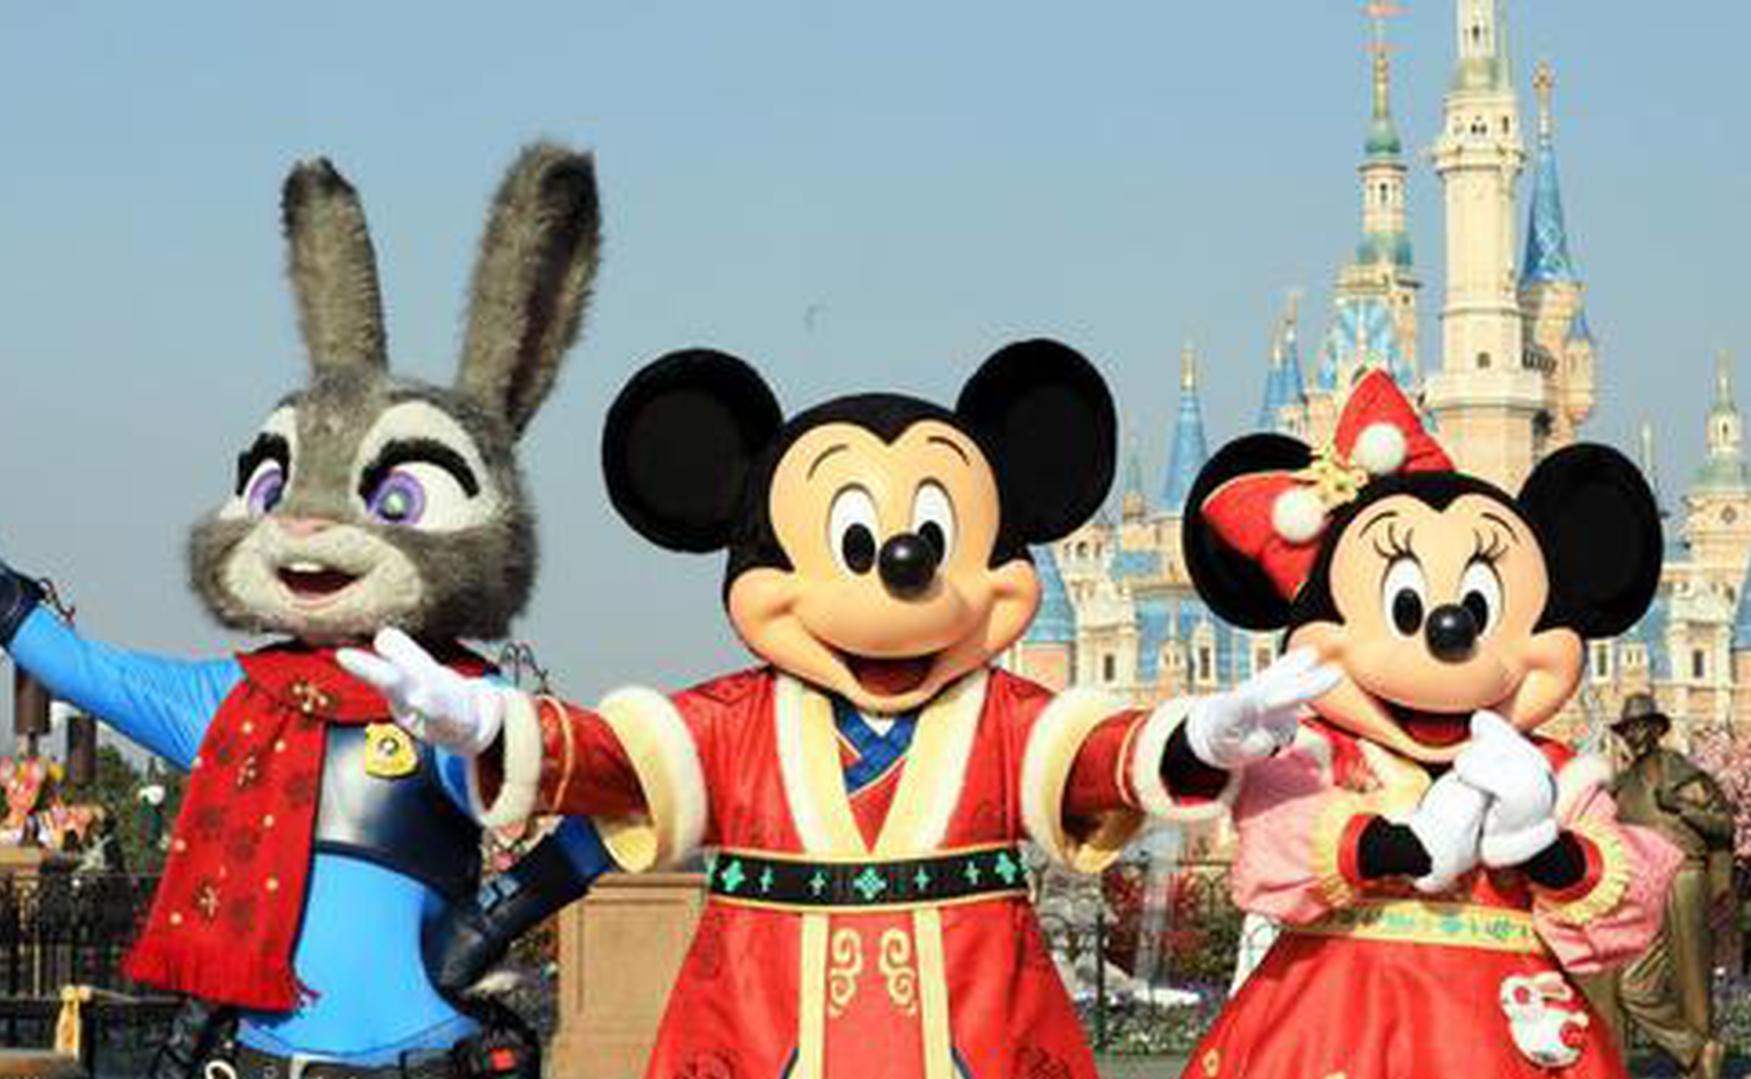 Shanghai Disneyland to enact ban on wagons